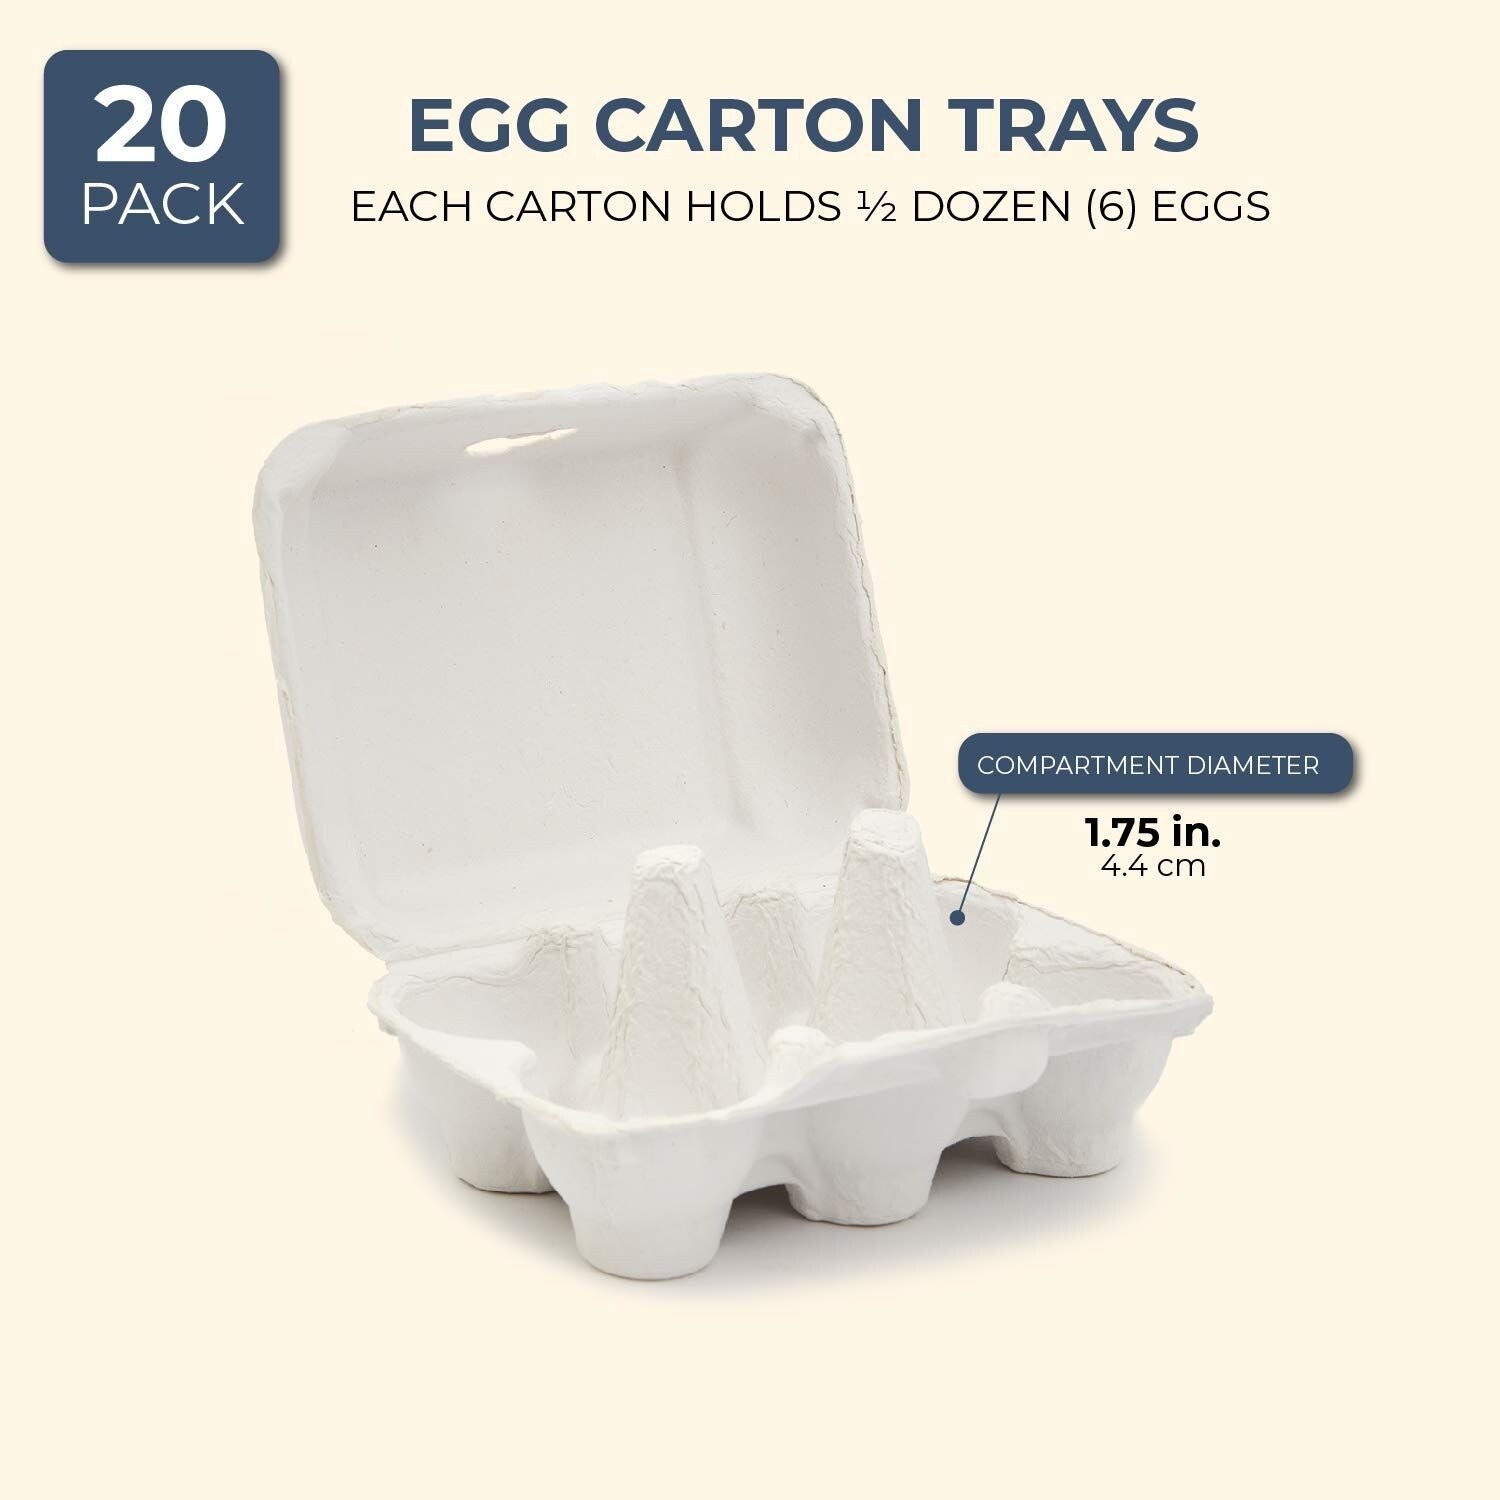 48 Pack Egg Cartons Bulk Holds 1 Dozen Chicken Eggs with Date